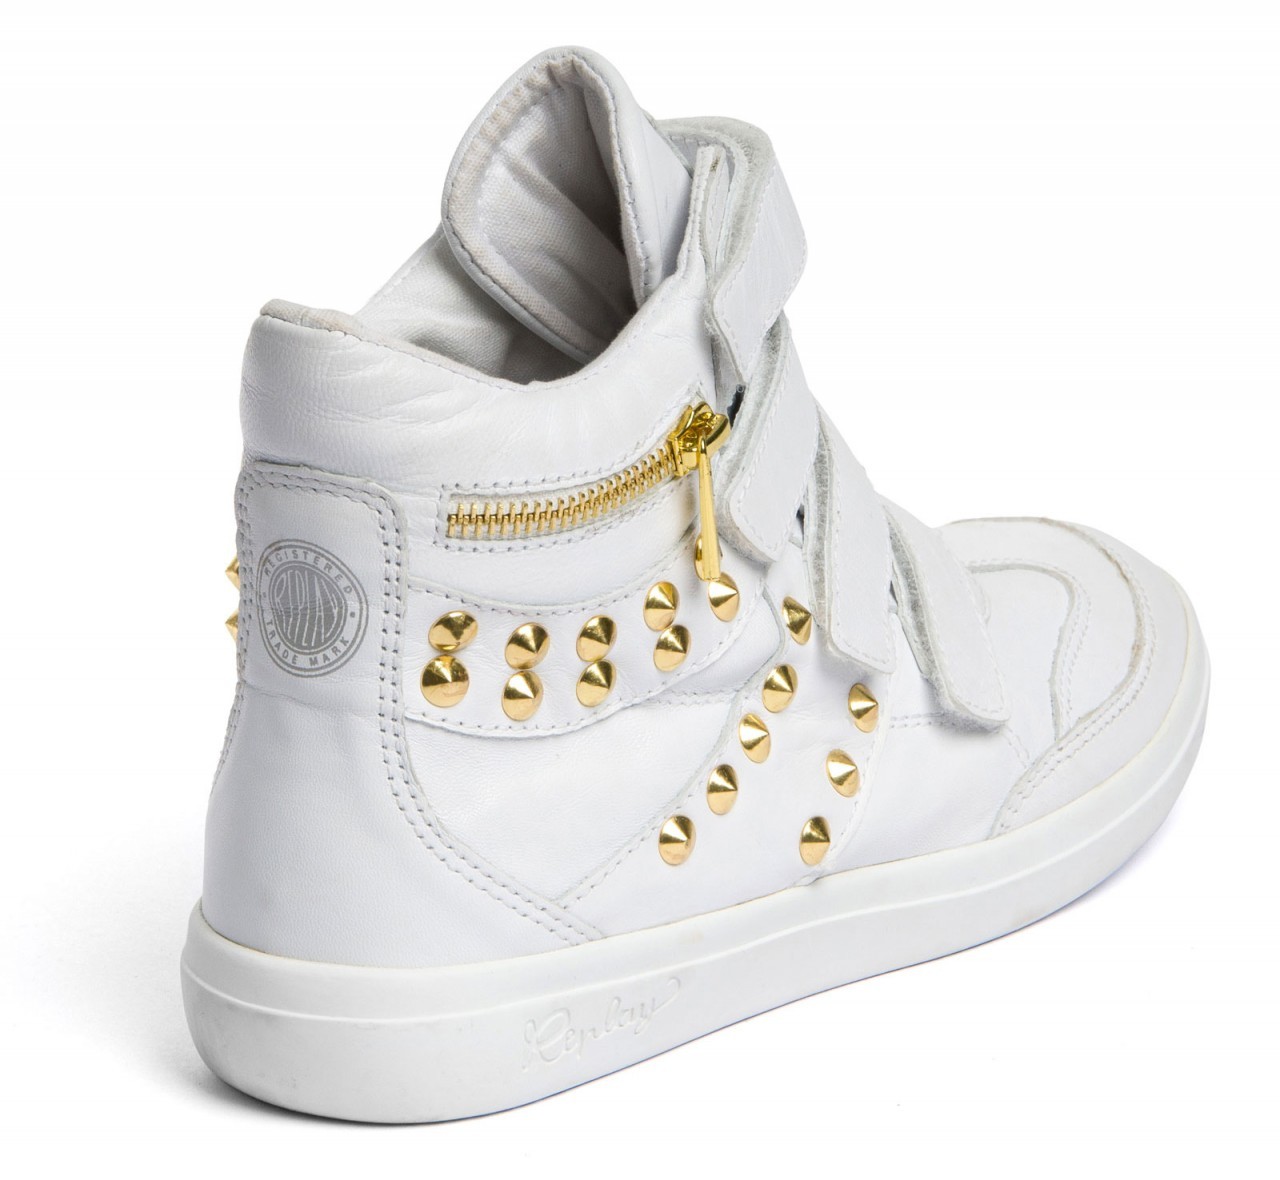 Replay fehér sneaker arany szegecsekkel 2013.4.12 fotója